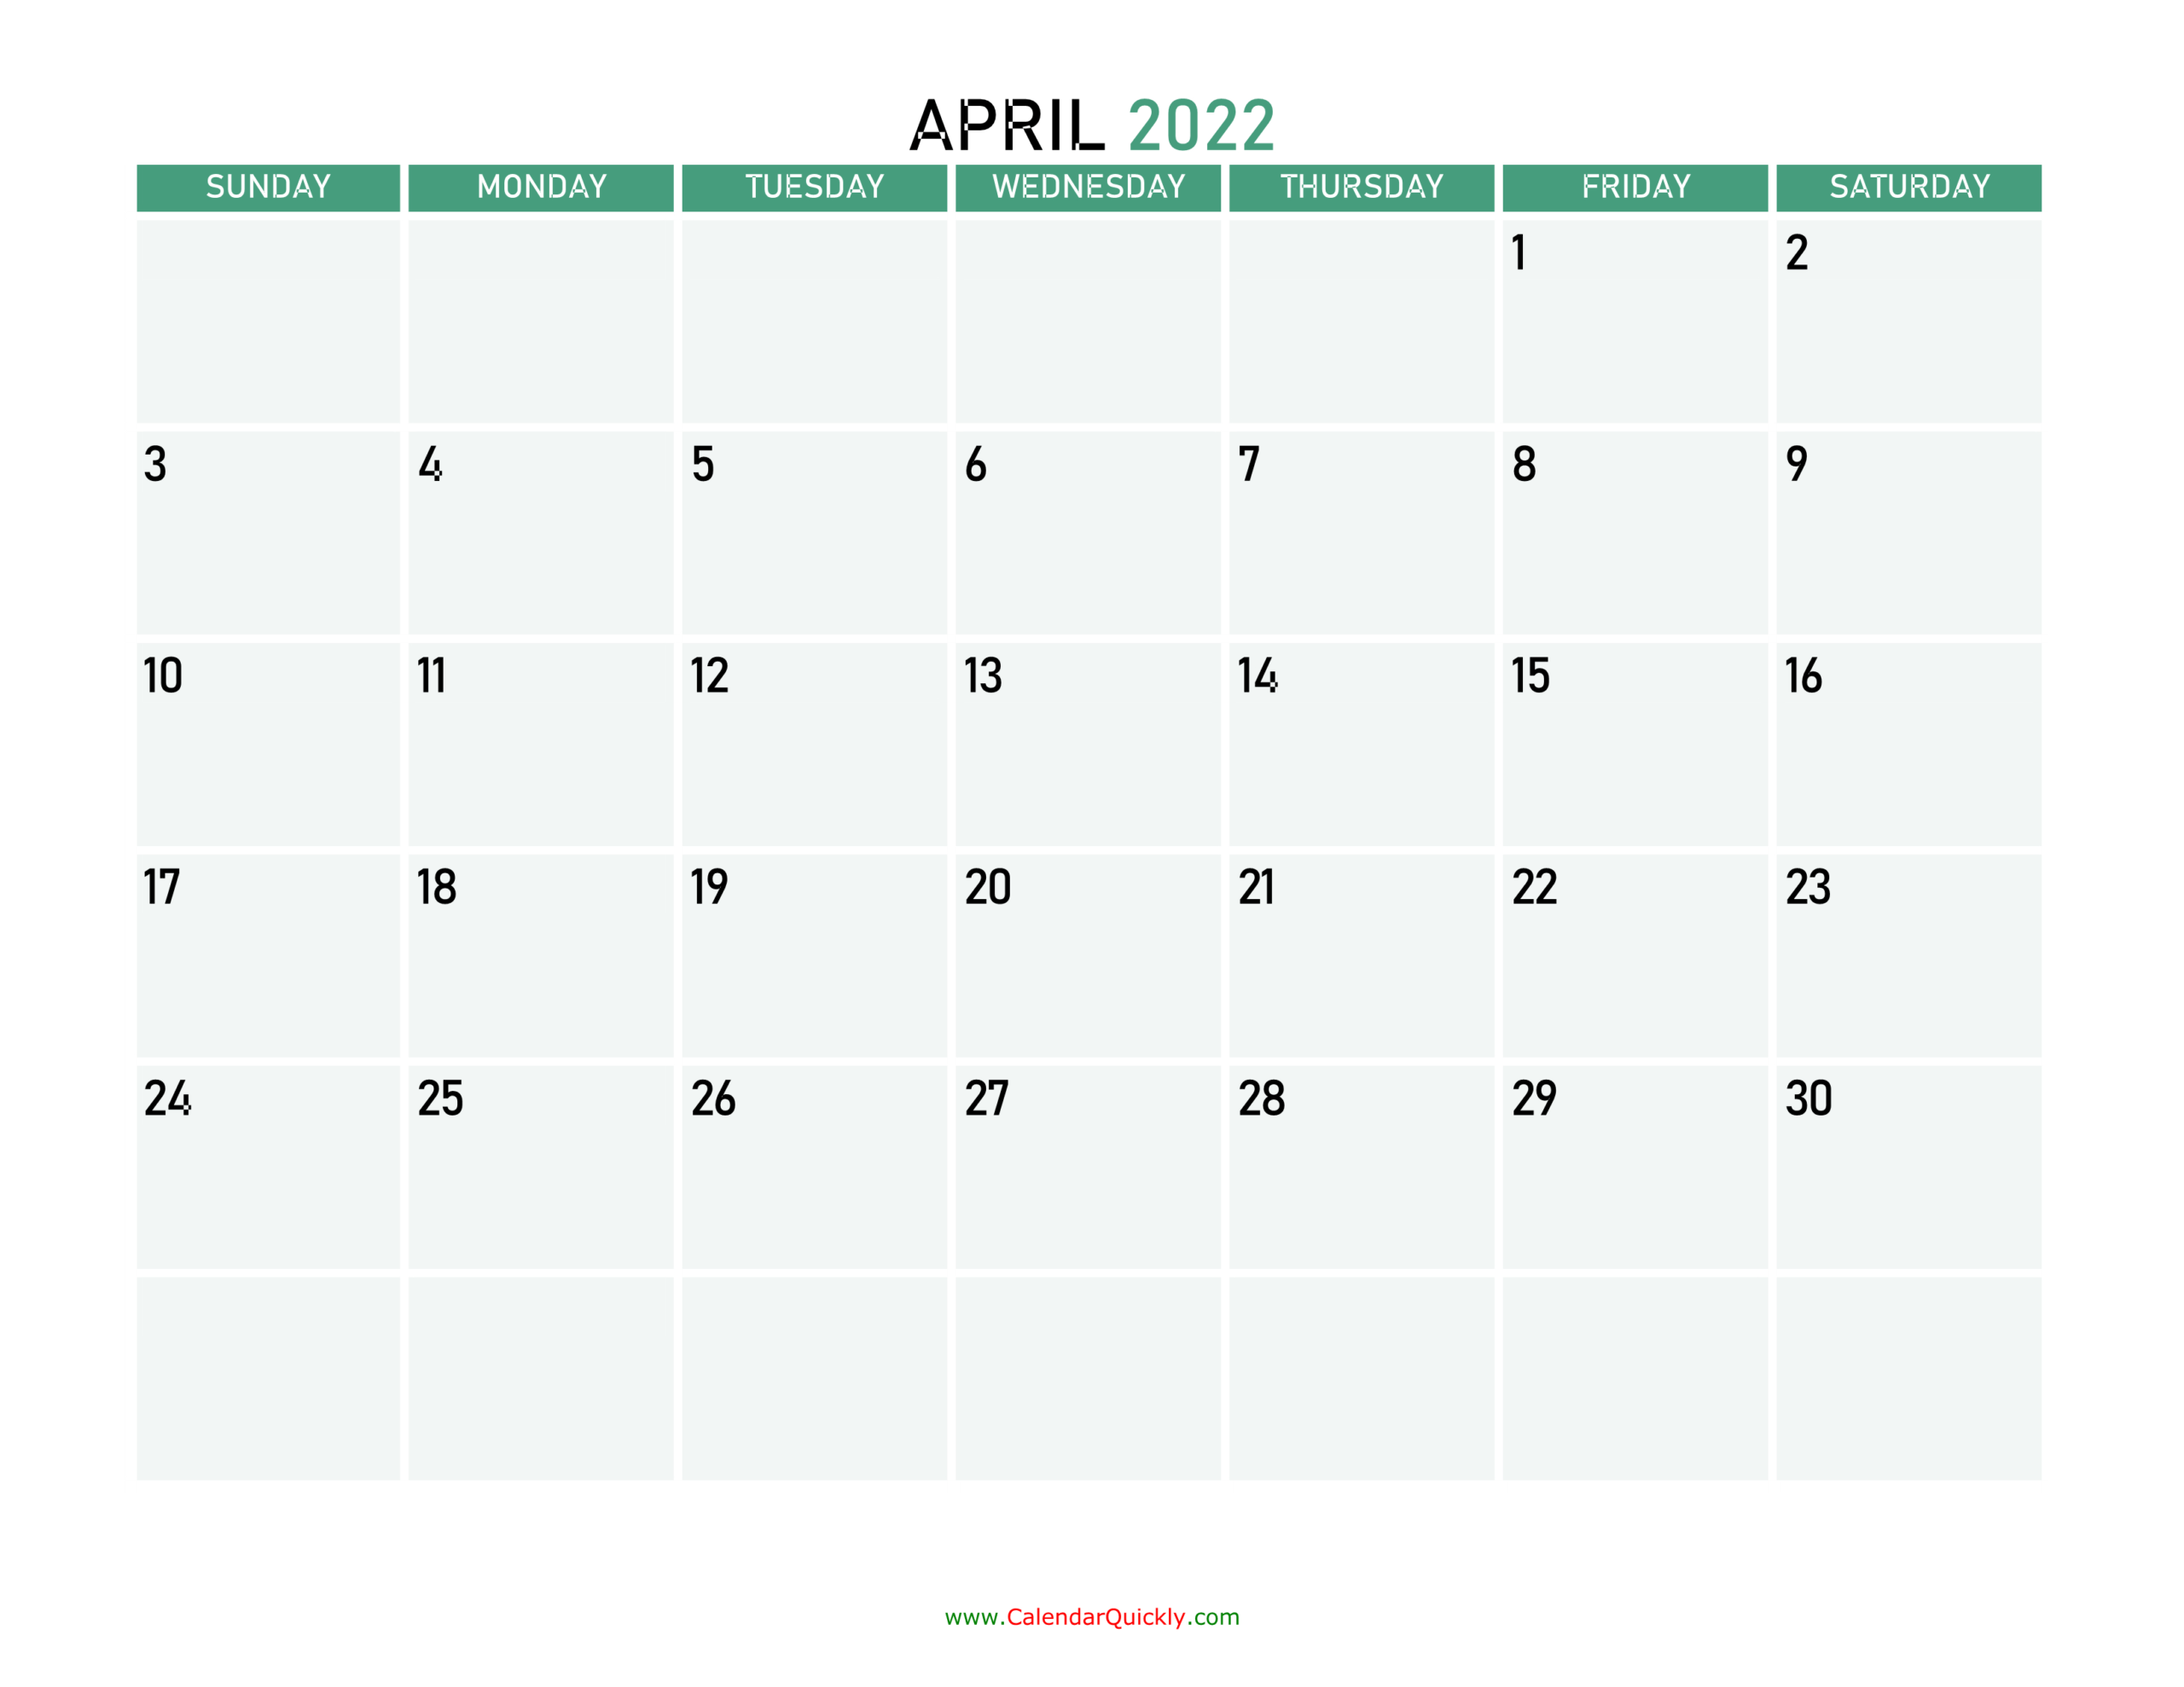 April 2022 Calendars | Calendar Quickly  March To April 2022 Calendar